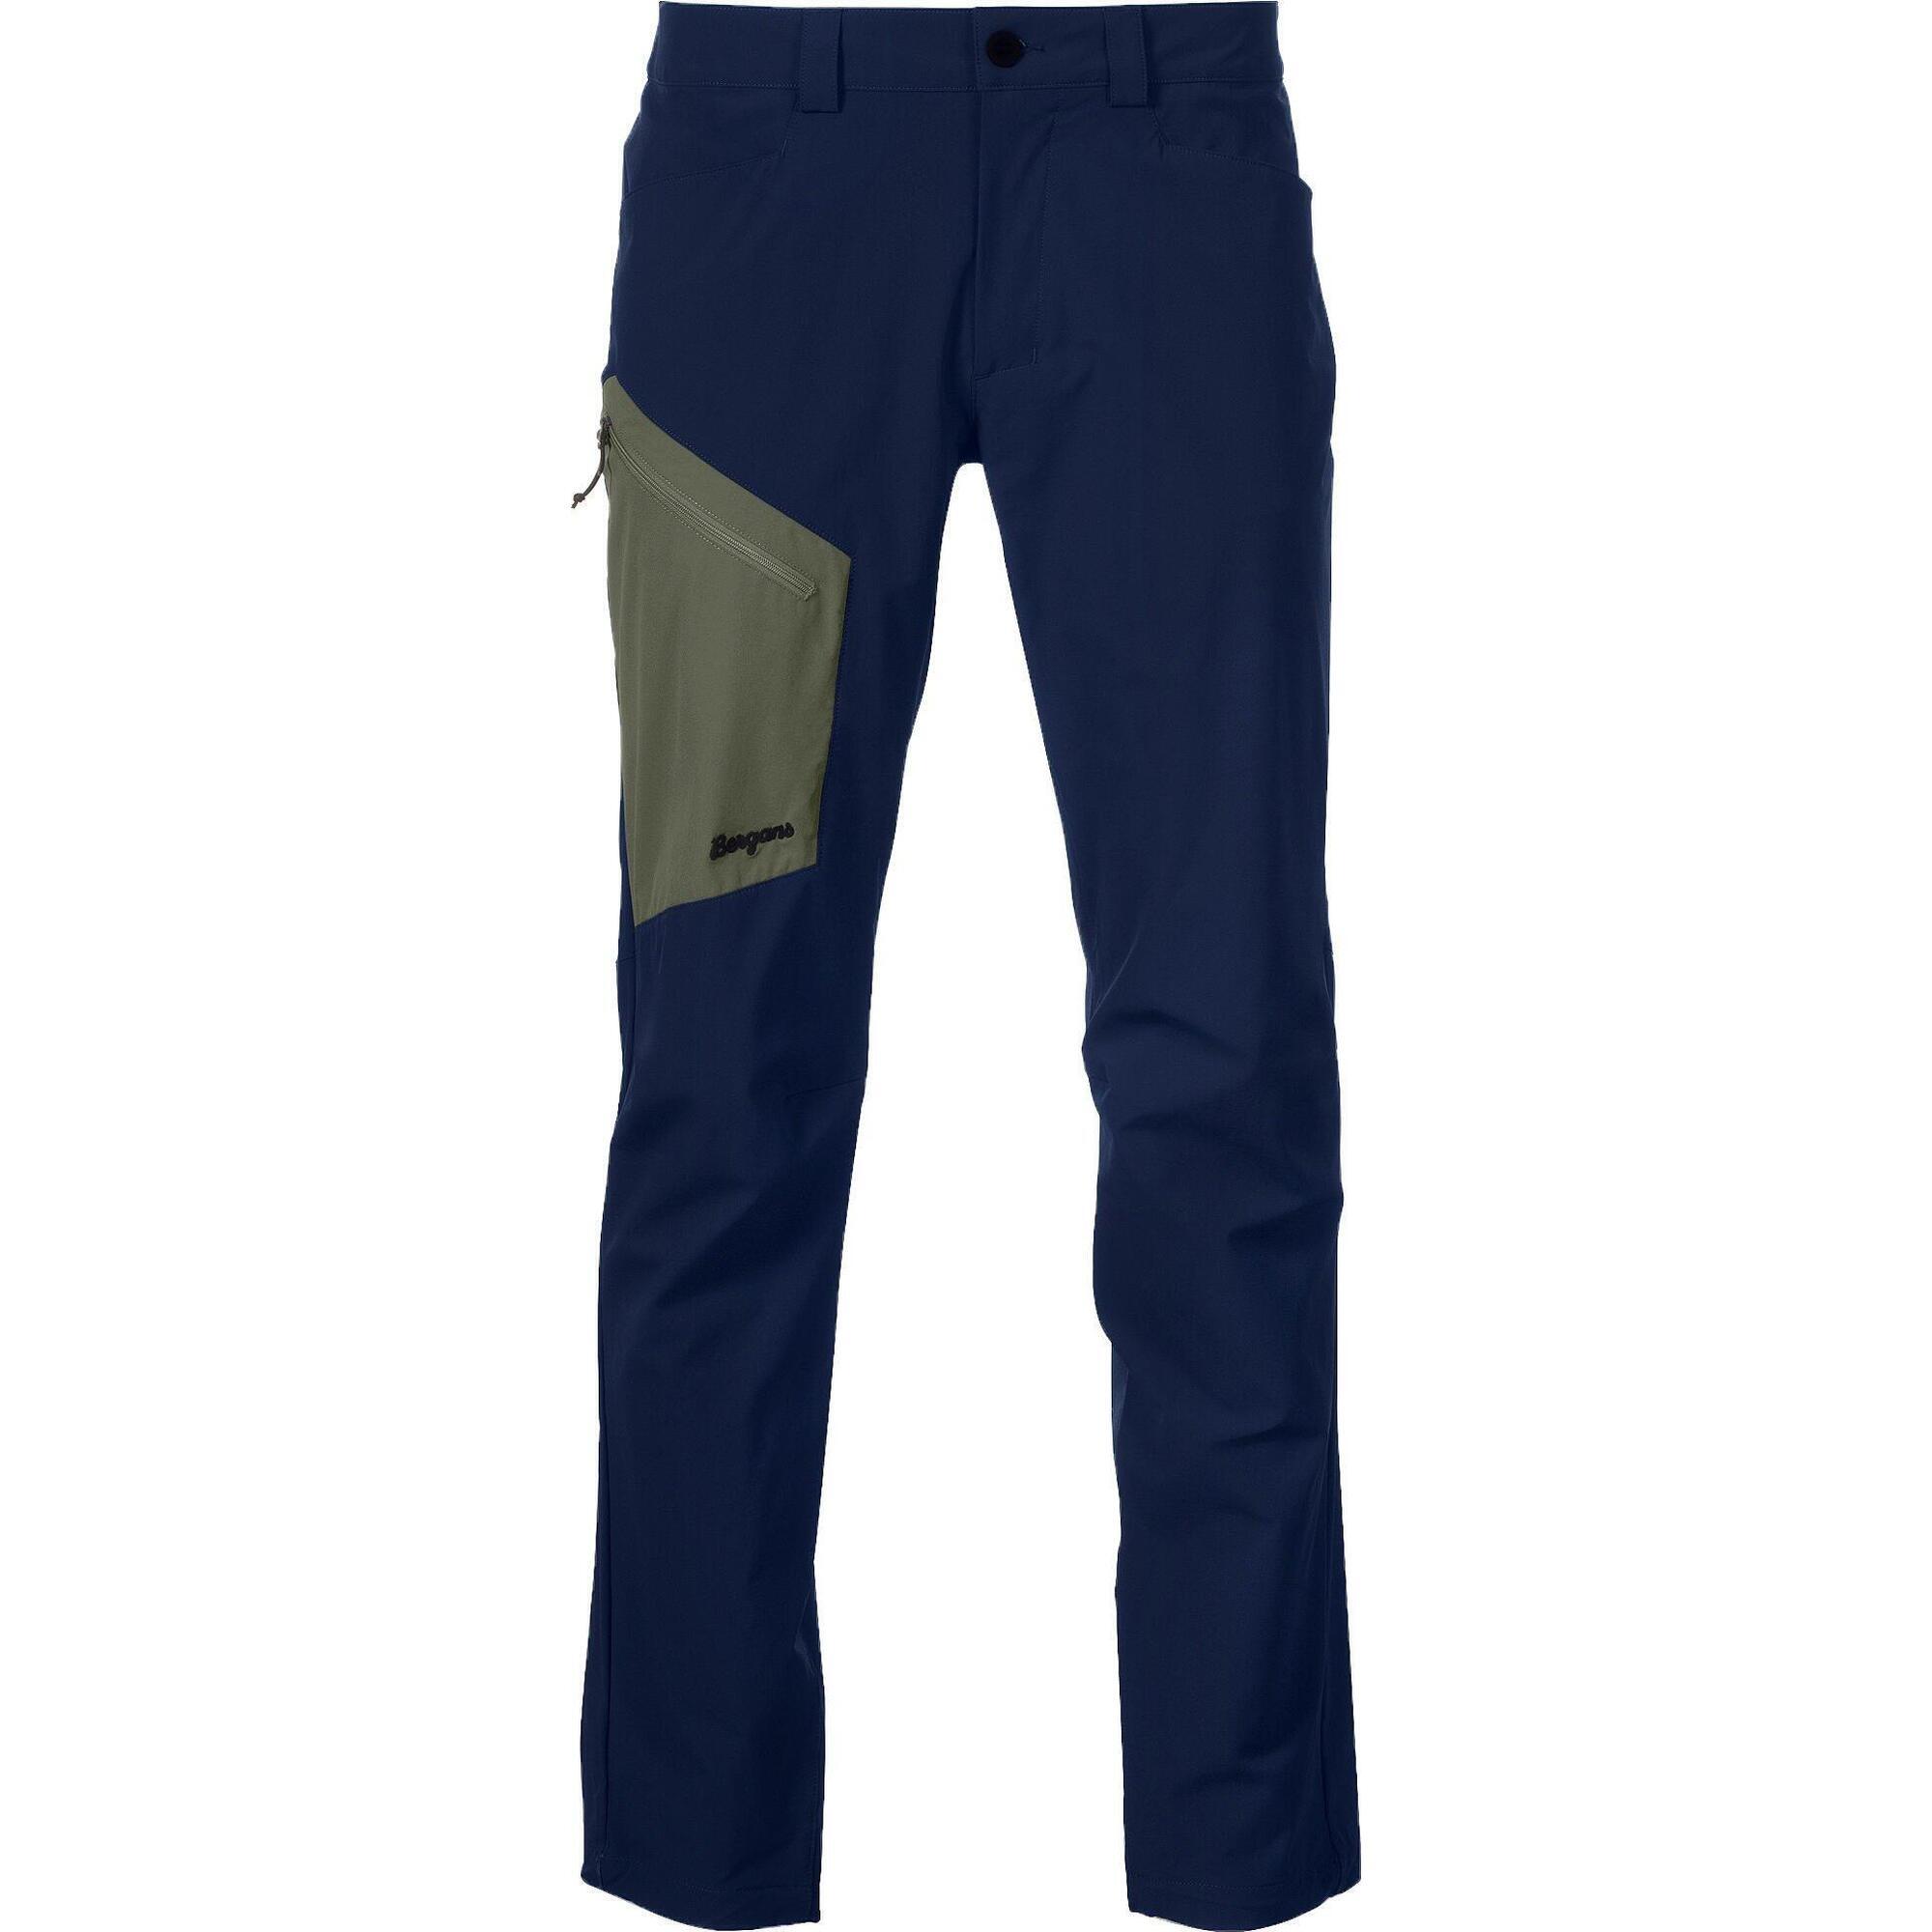 Bergans of Norway Vaagaa Light Softshell Pants - Men - Navy Blue/Green Mud